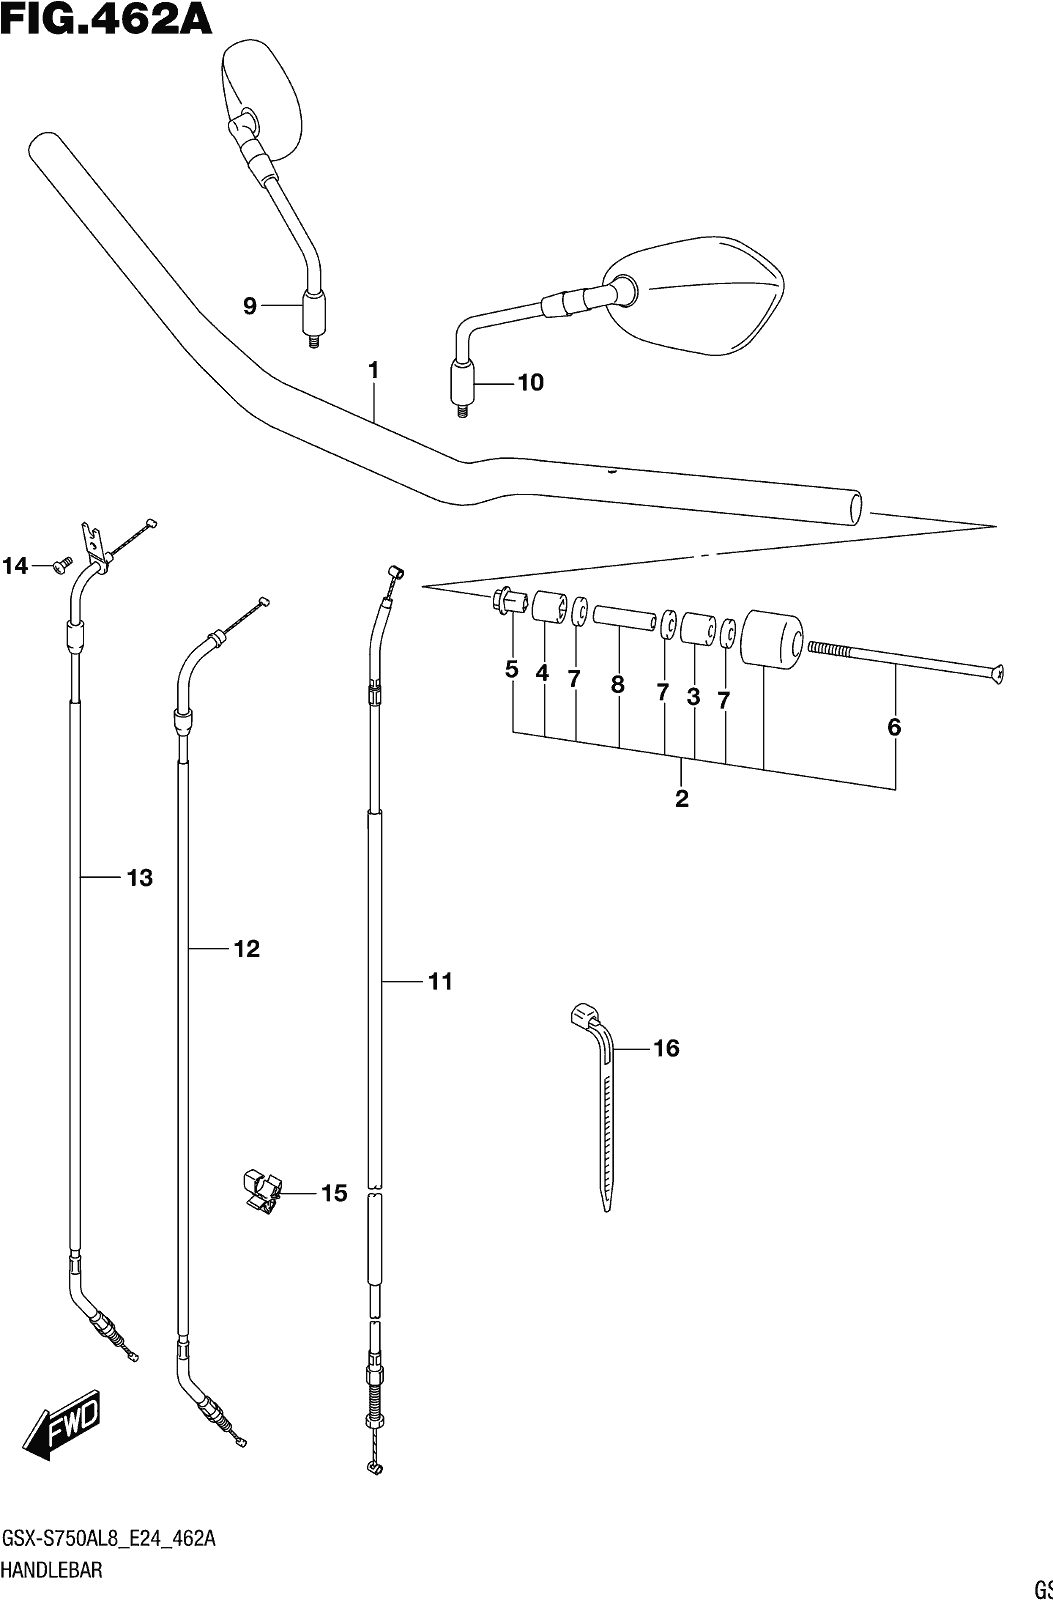 Fig.462a Handlebar